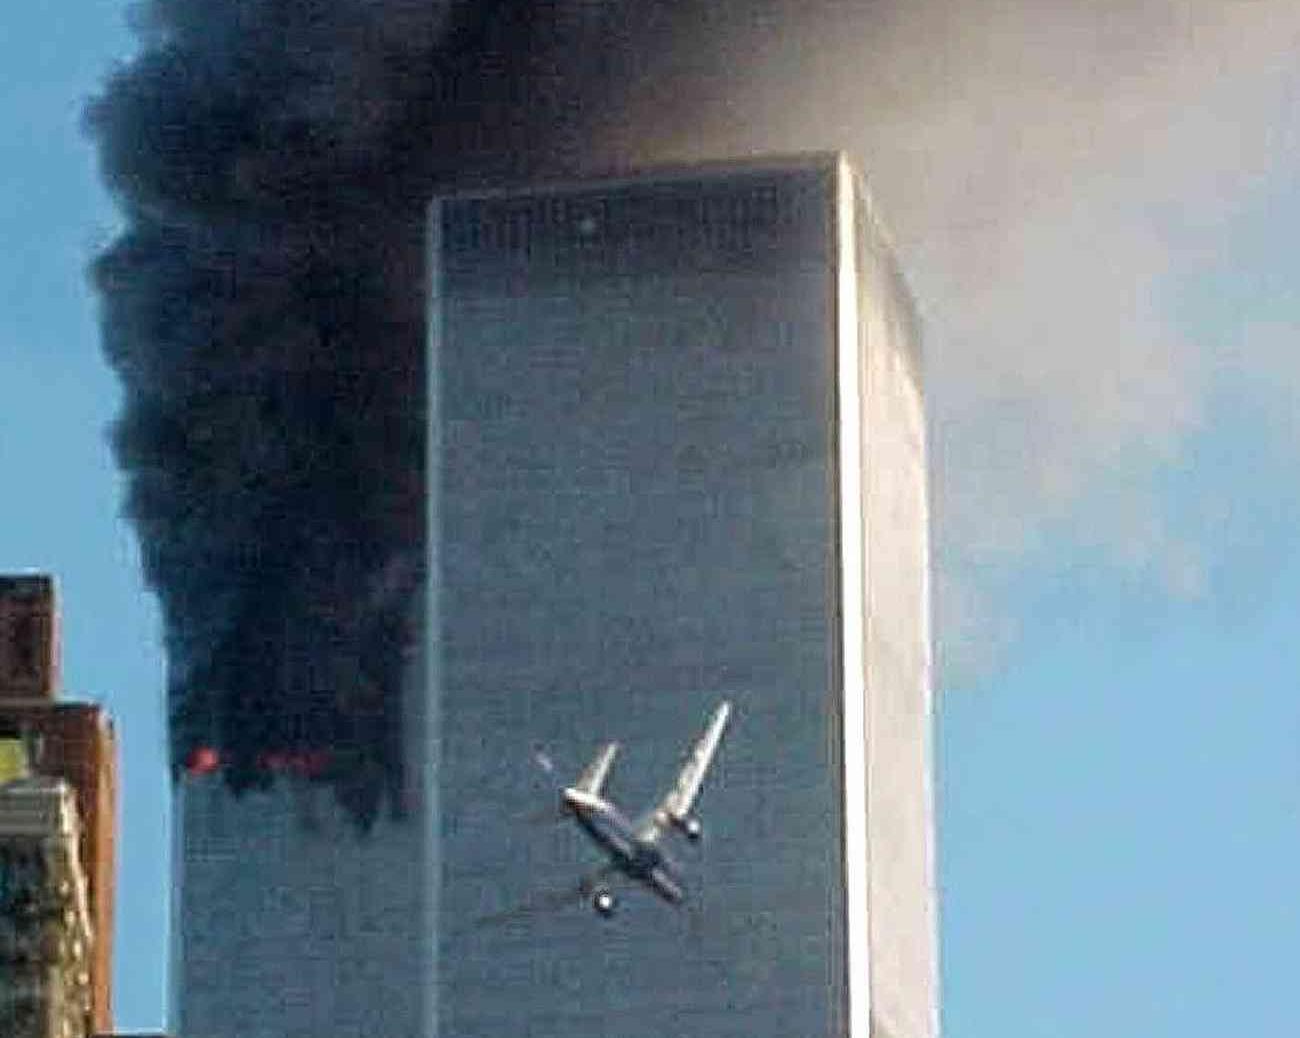 Terrorattacken mot World Trade Center i USA 11 september 2001.